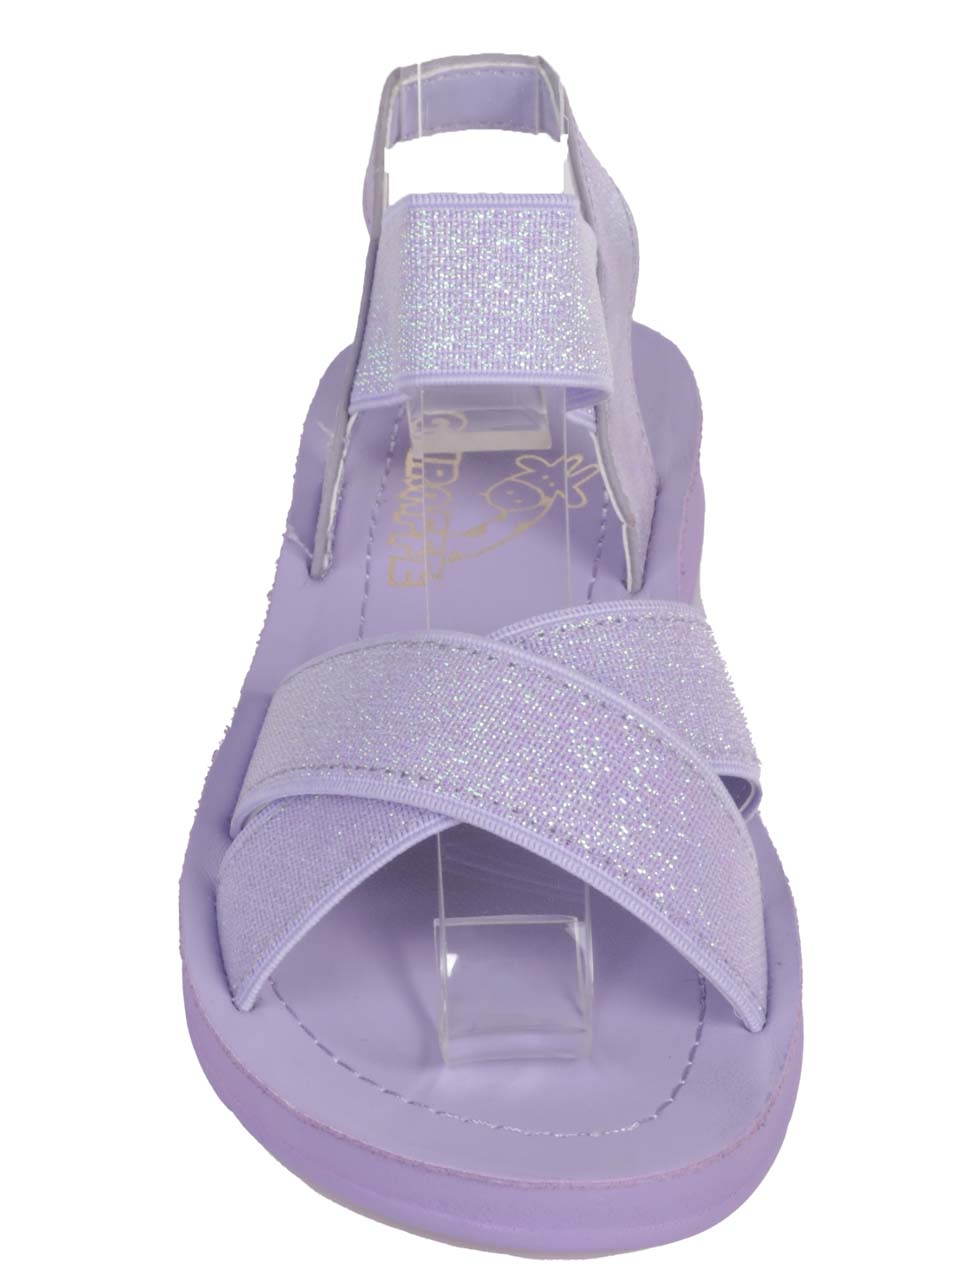 Ежедневни детски сандали в лилаво 17F-24221 purple 